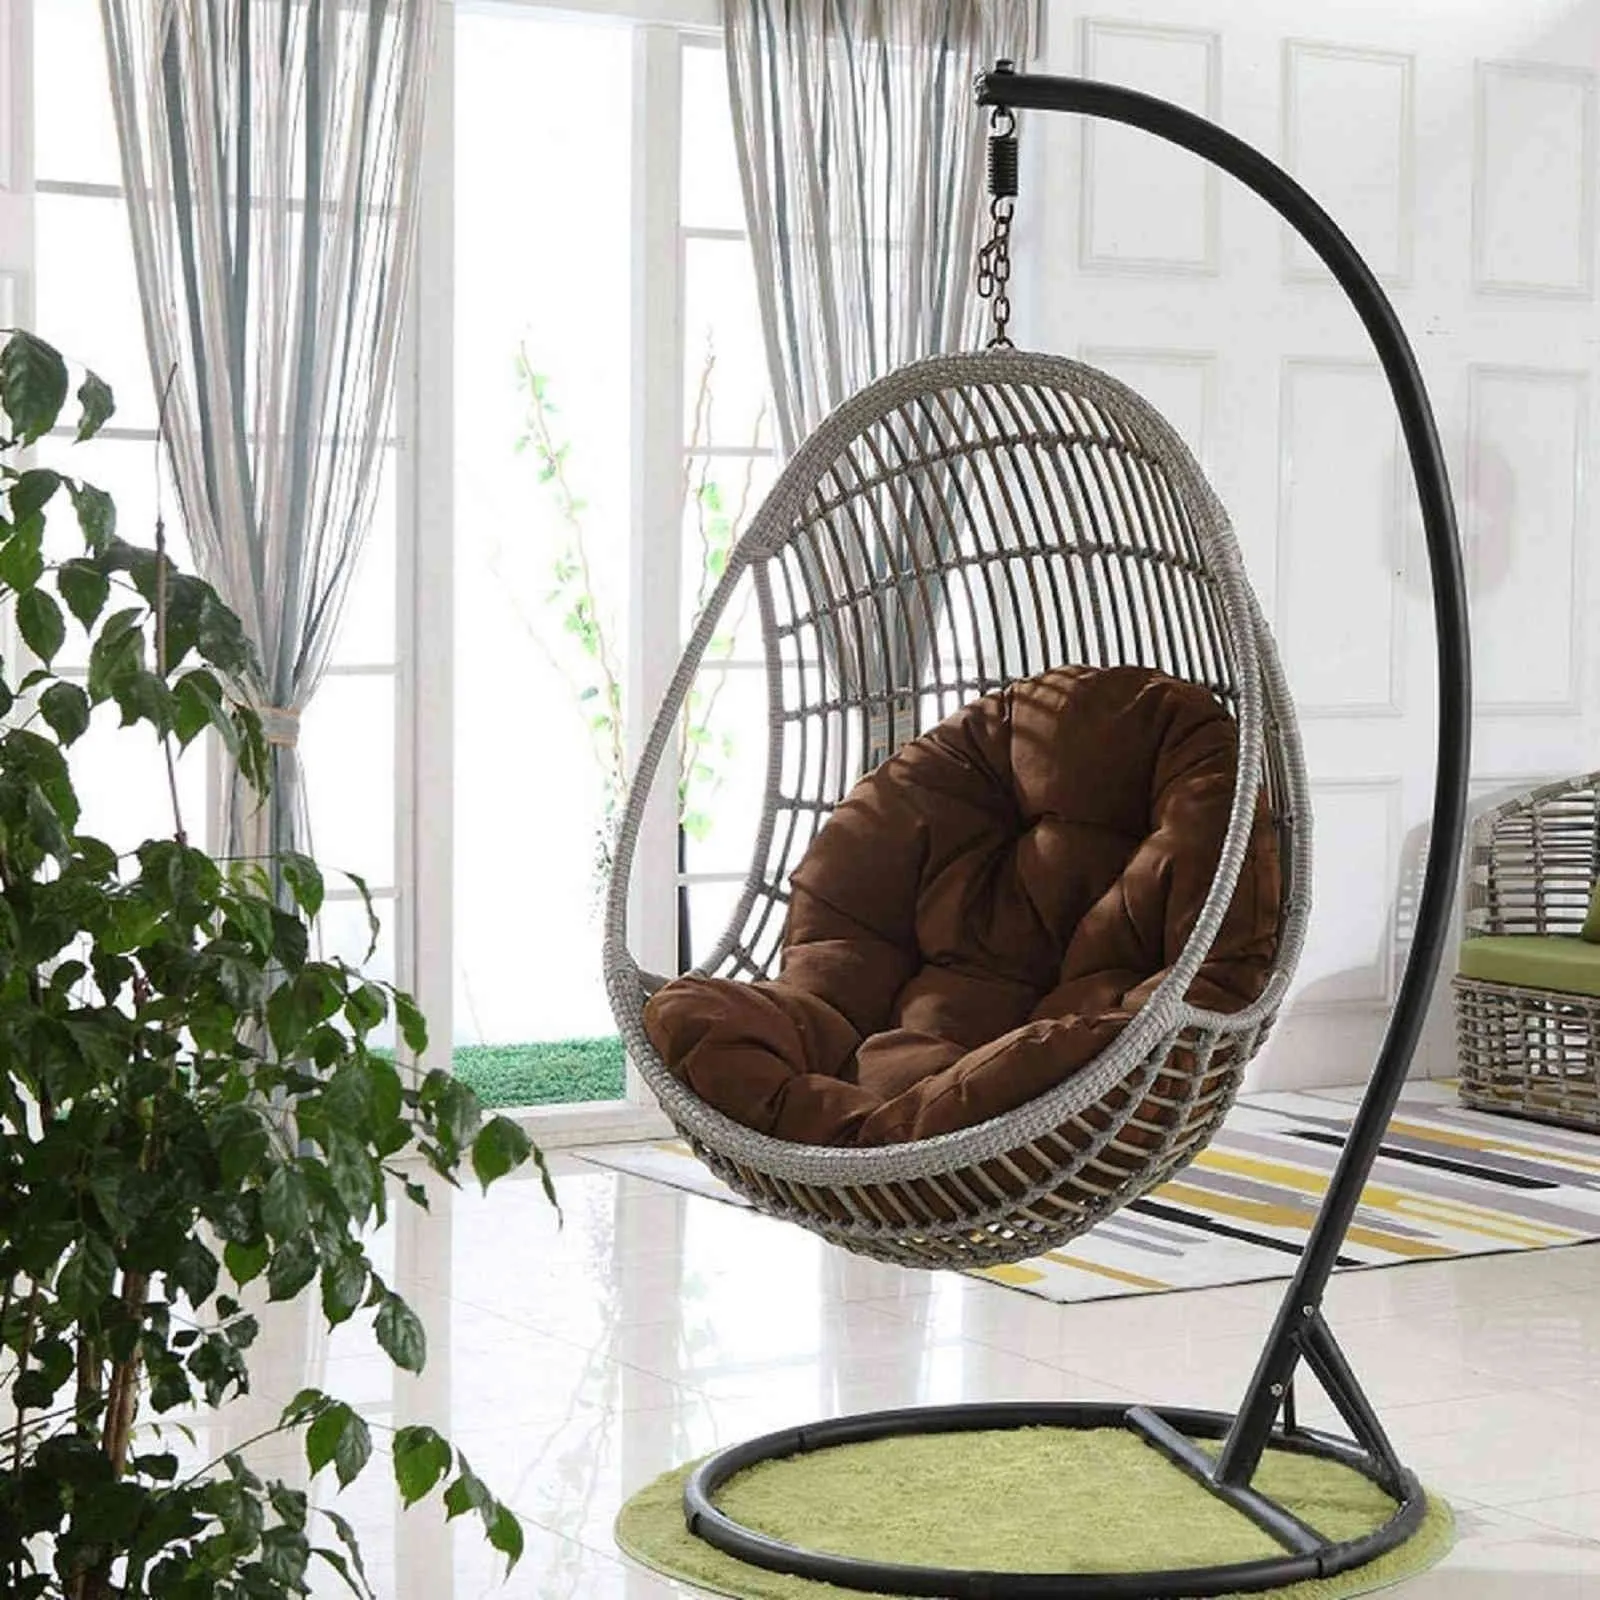 Стул с яйцом гамак сад свинг -подушка подвесное кресло с декоративной подушкой 4311097